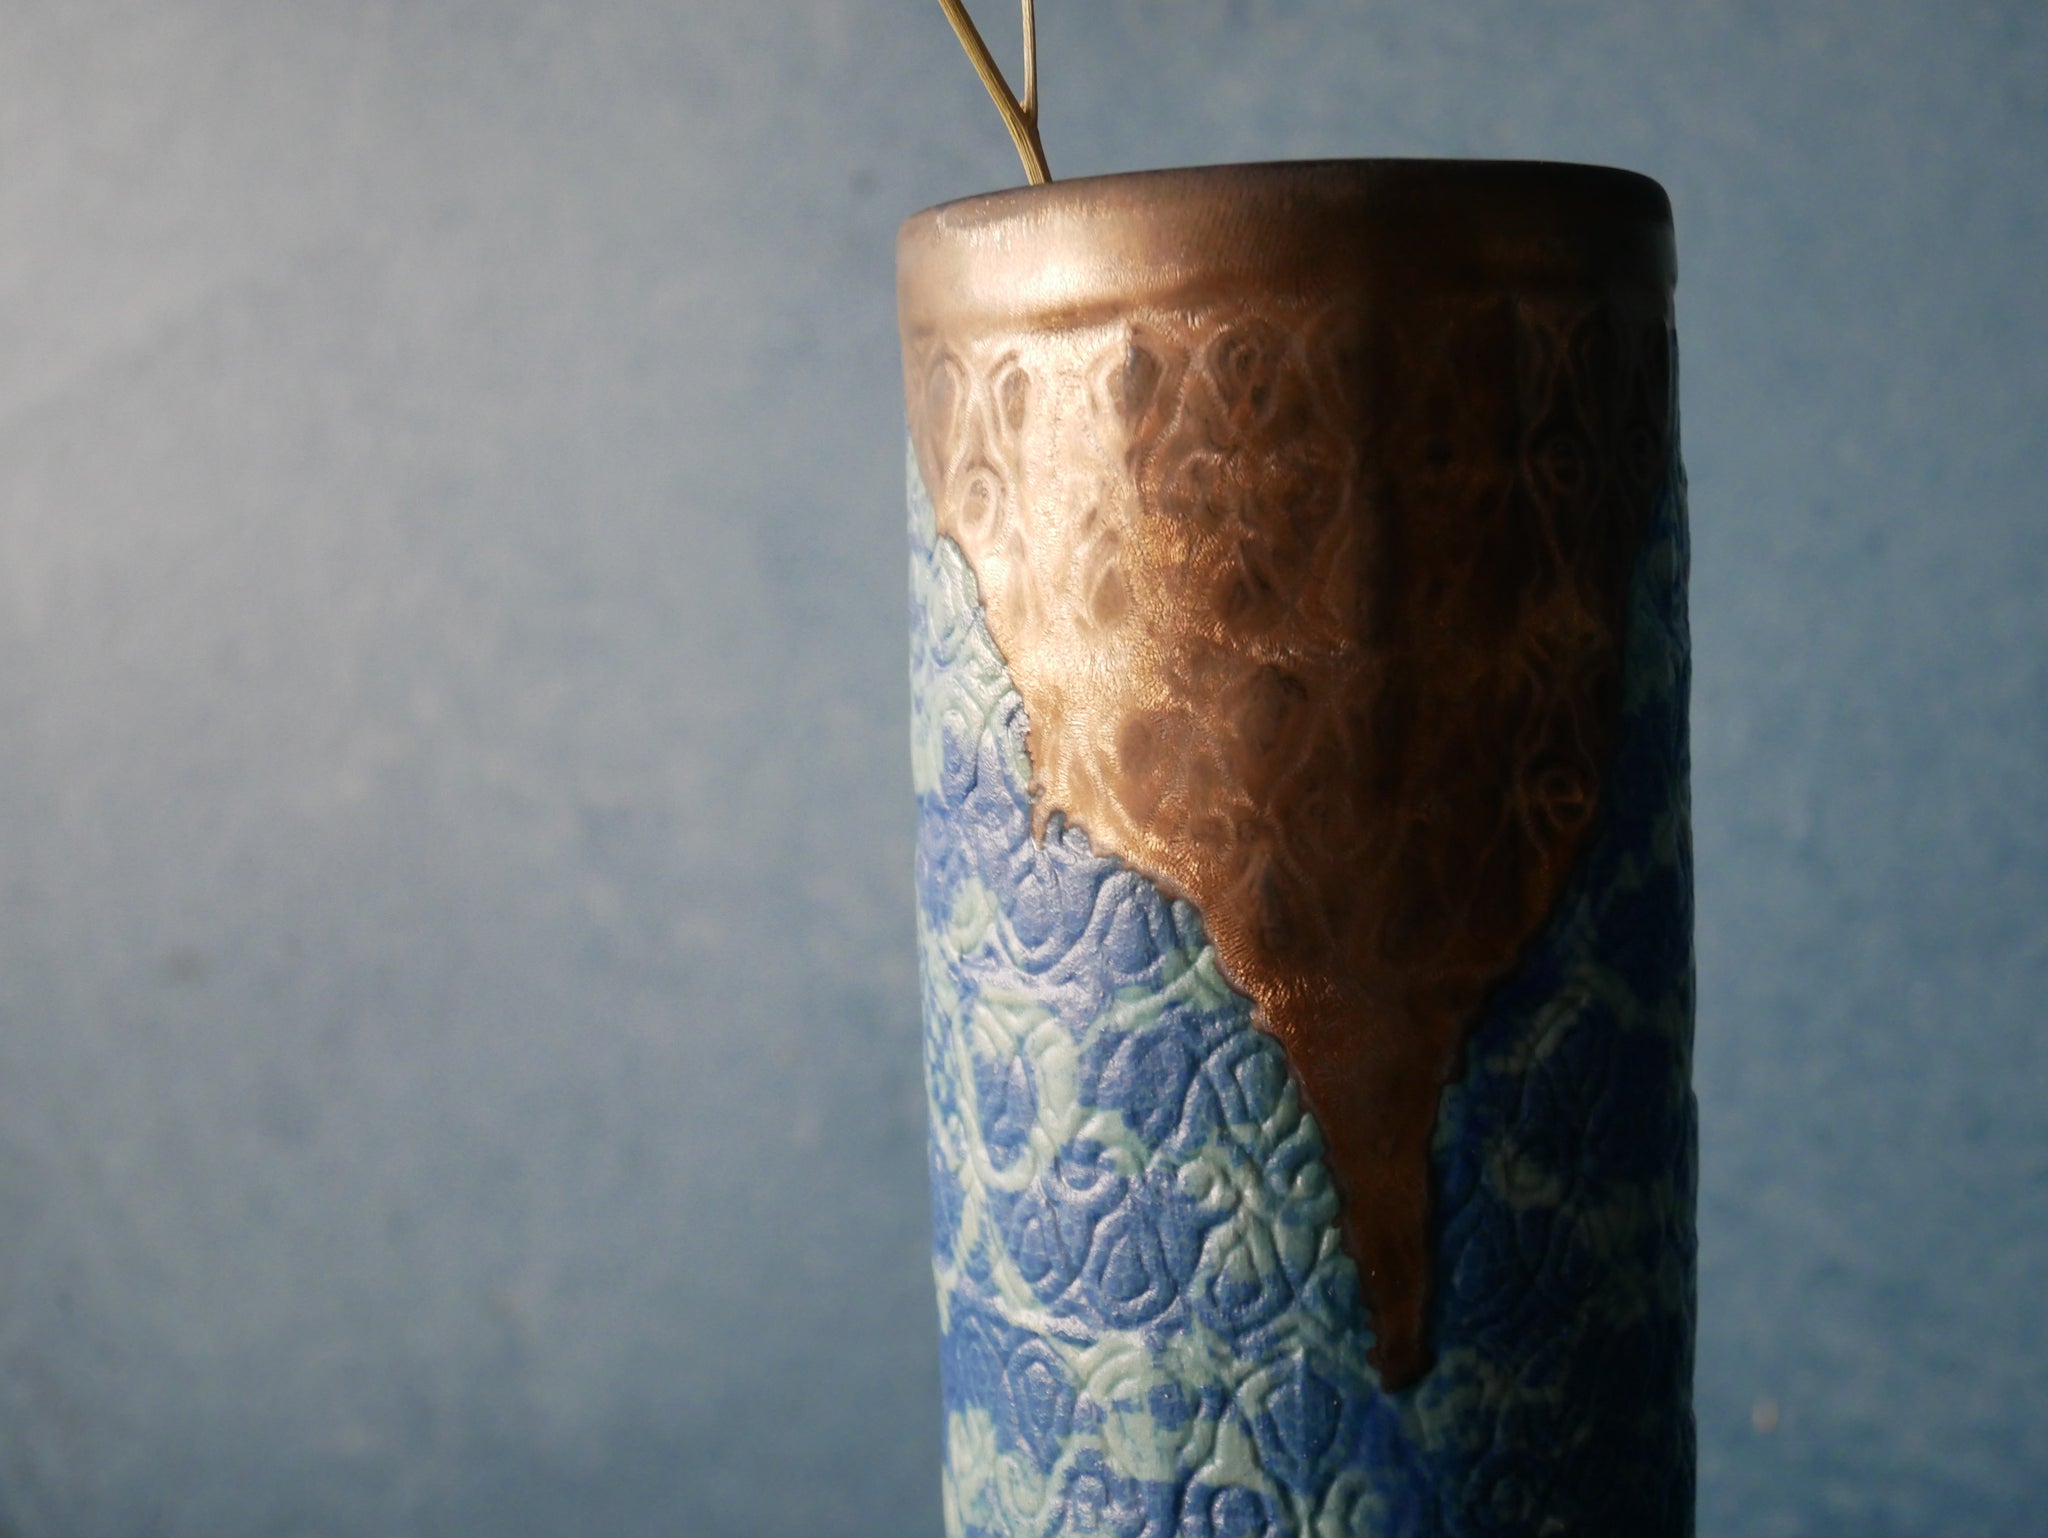 Rustic Drip Vase